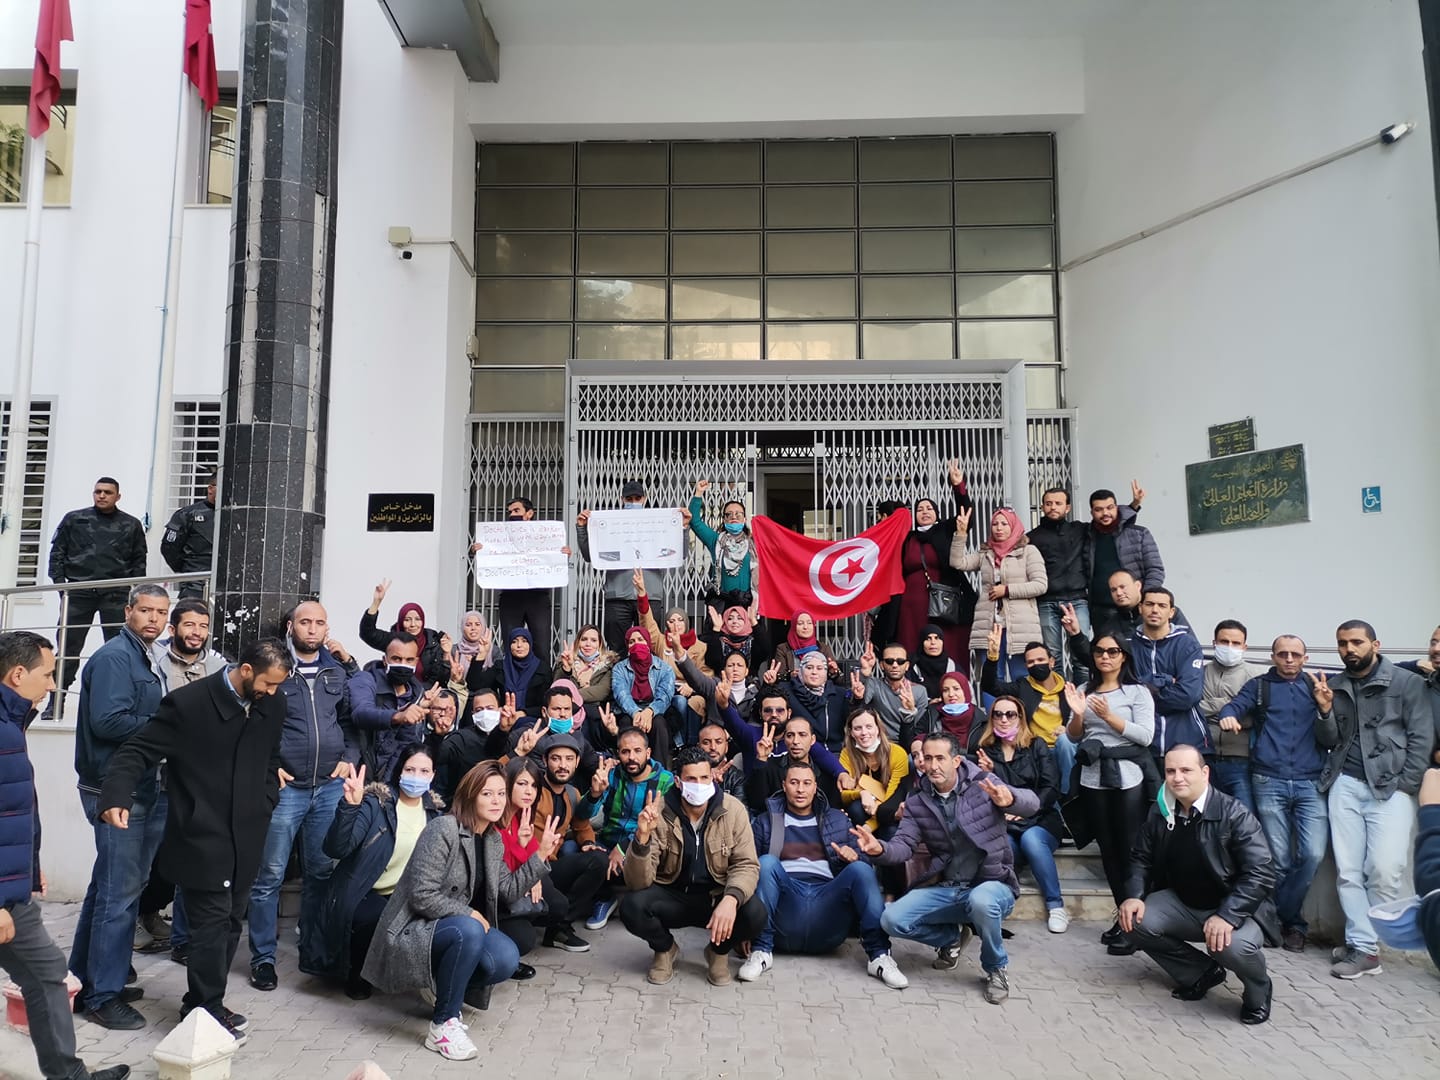 Tunisie : Le ministère de l’Enseignement supérieur appelle les docteurs chômeurs à lever la grève de la faim